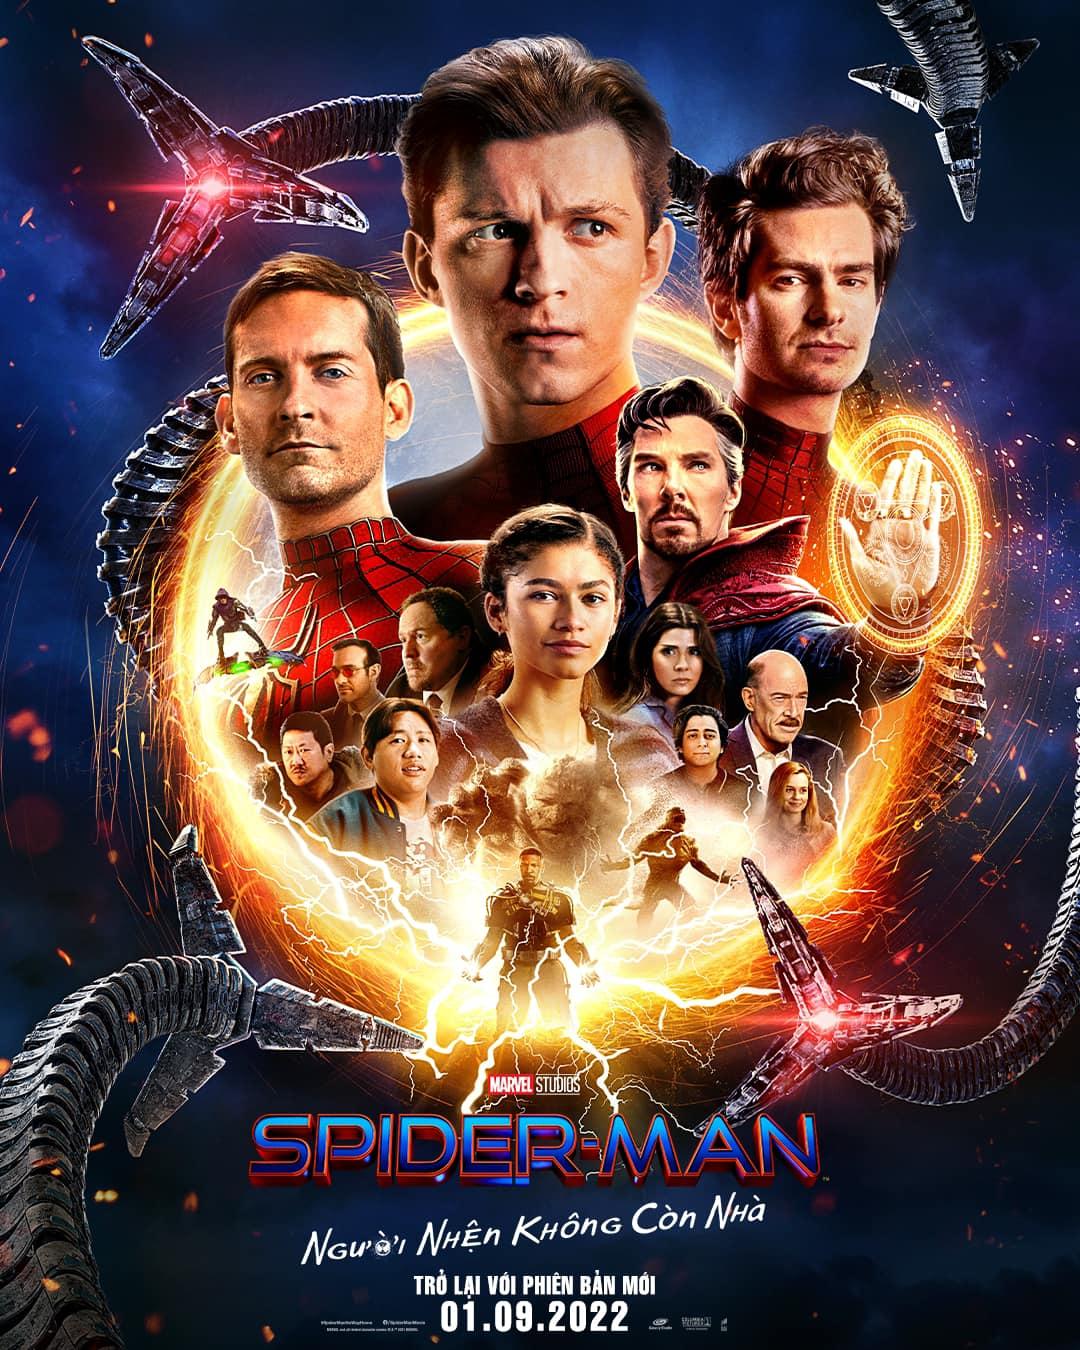 Bom tấn ăn khách năm 2021 - Spider-Man: No Way Home trở lại với phiên bản nhiều điều thú vị hơn dịp lễ 2/9 - Ảnh 1.